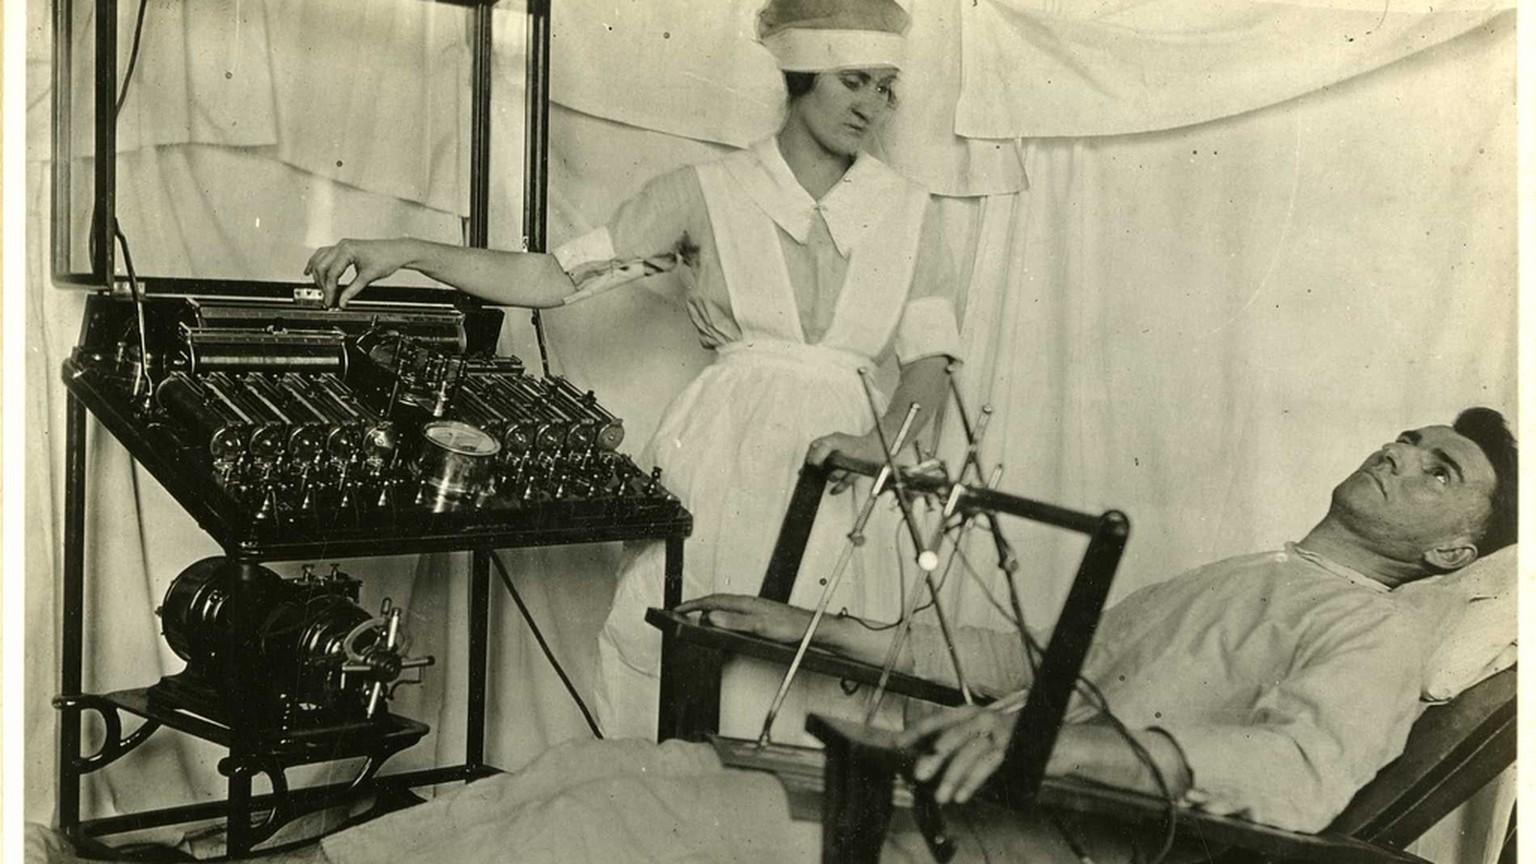 Elektrotherapie zur Behandlung von psychischen Problemen, circa 1916.